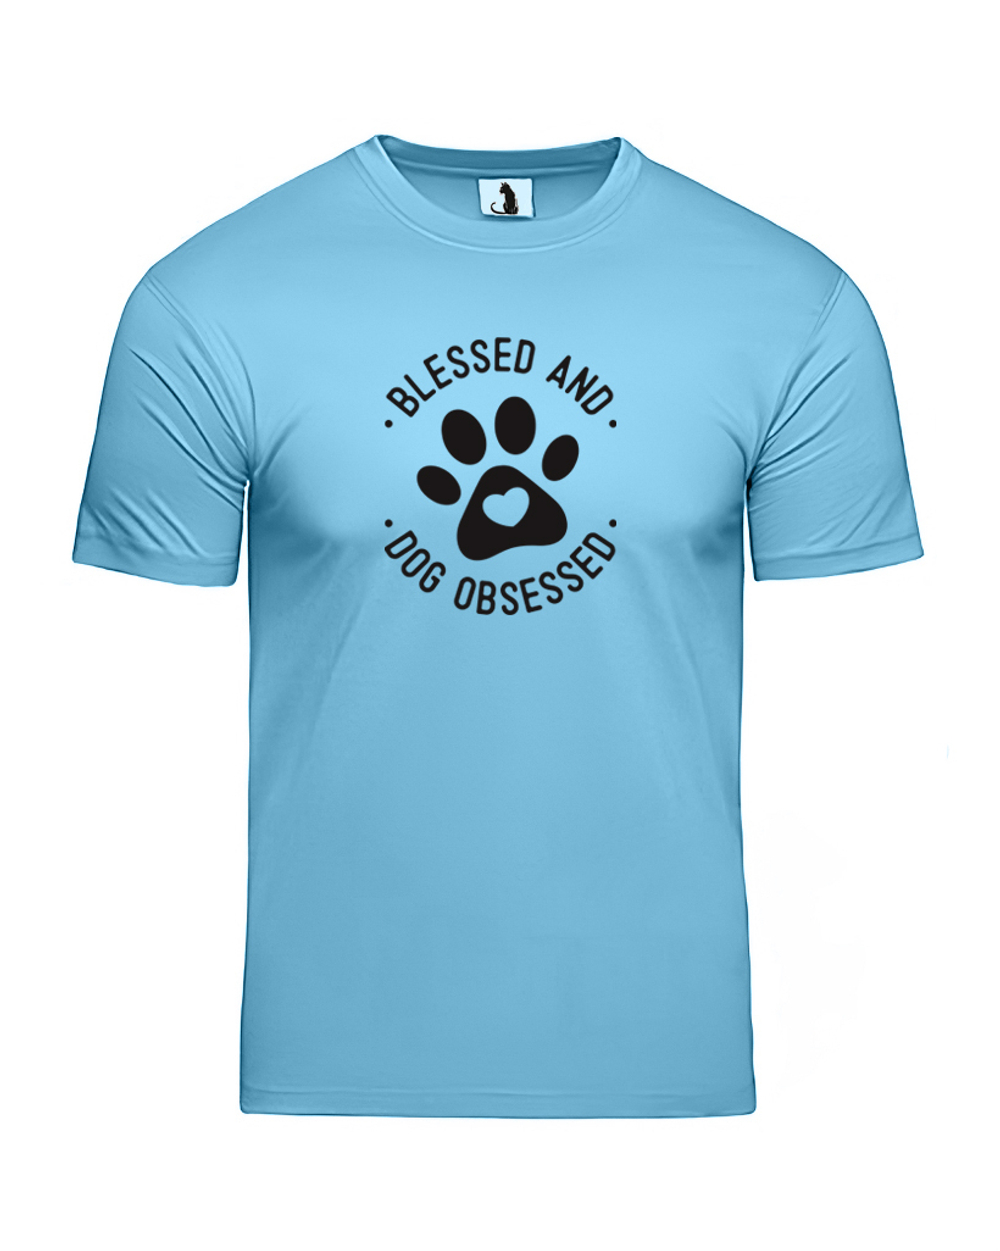 Футболка Blessed and dog obsessed unisex голубая с черным рисунком